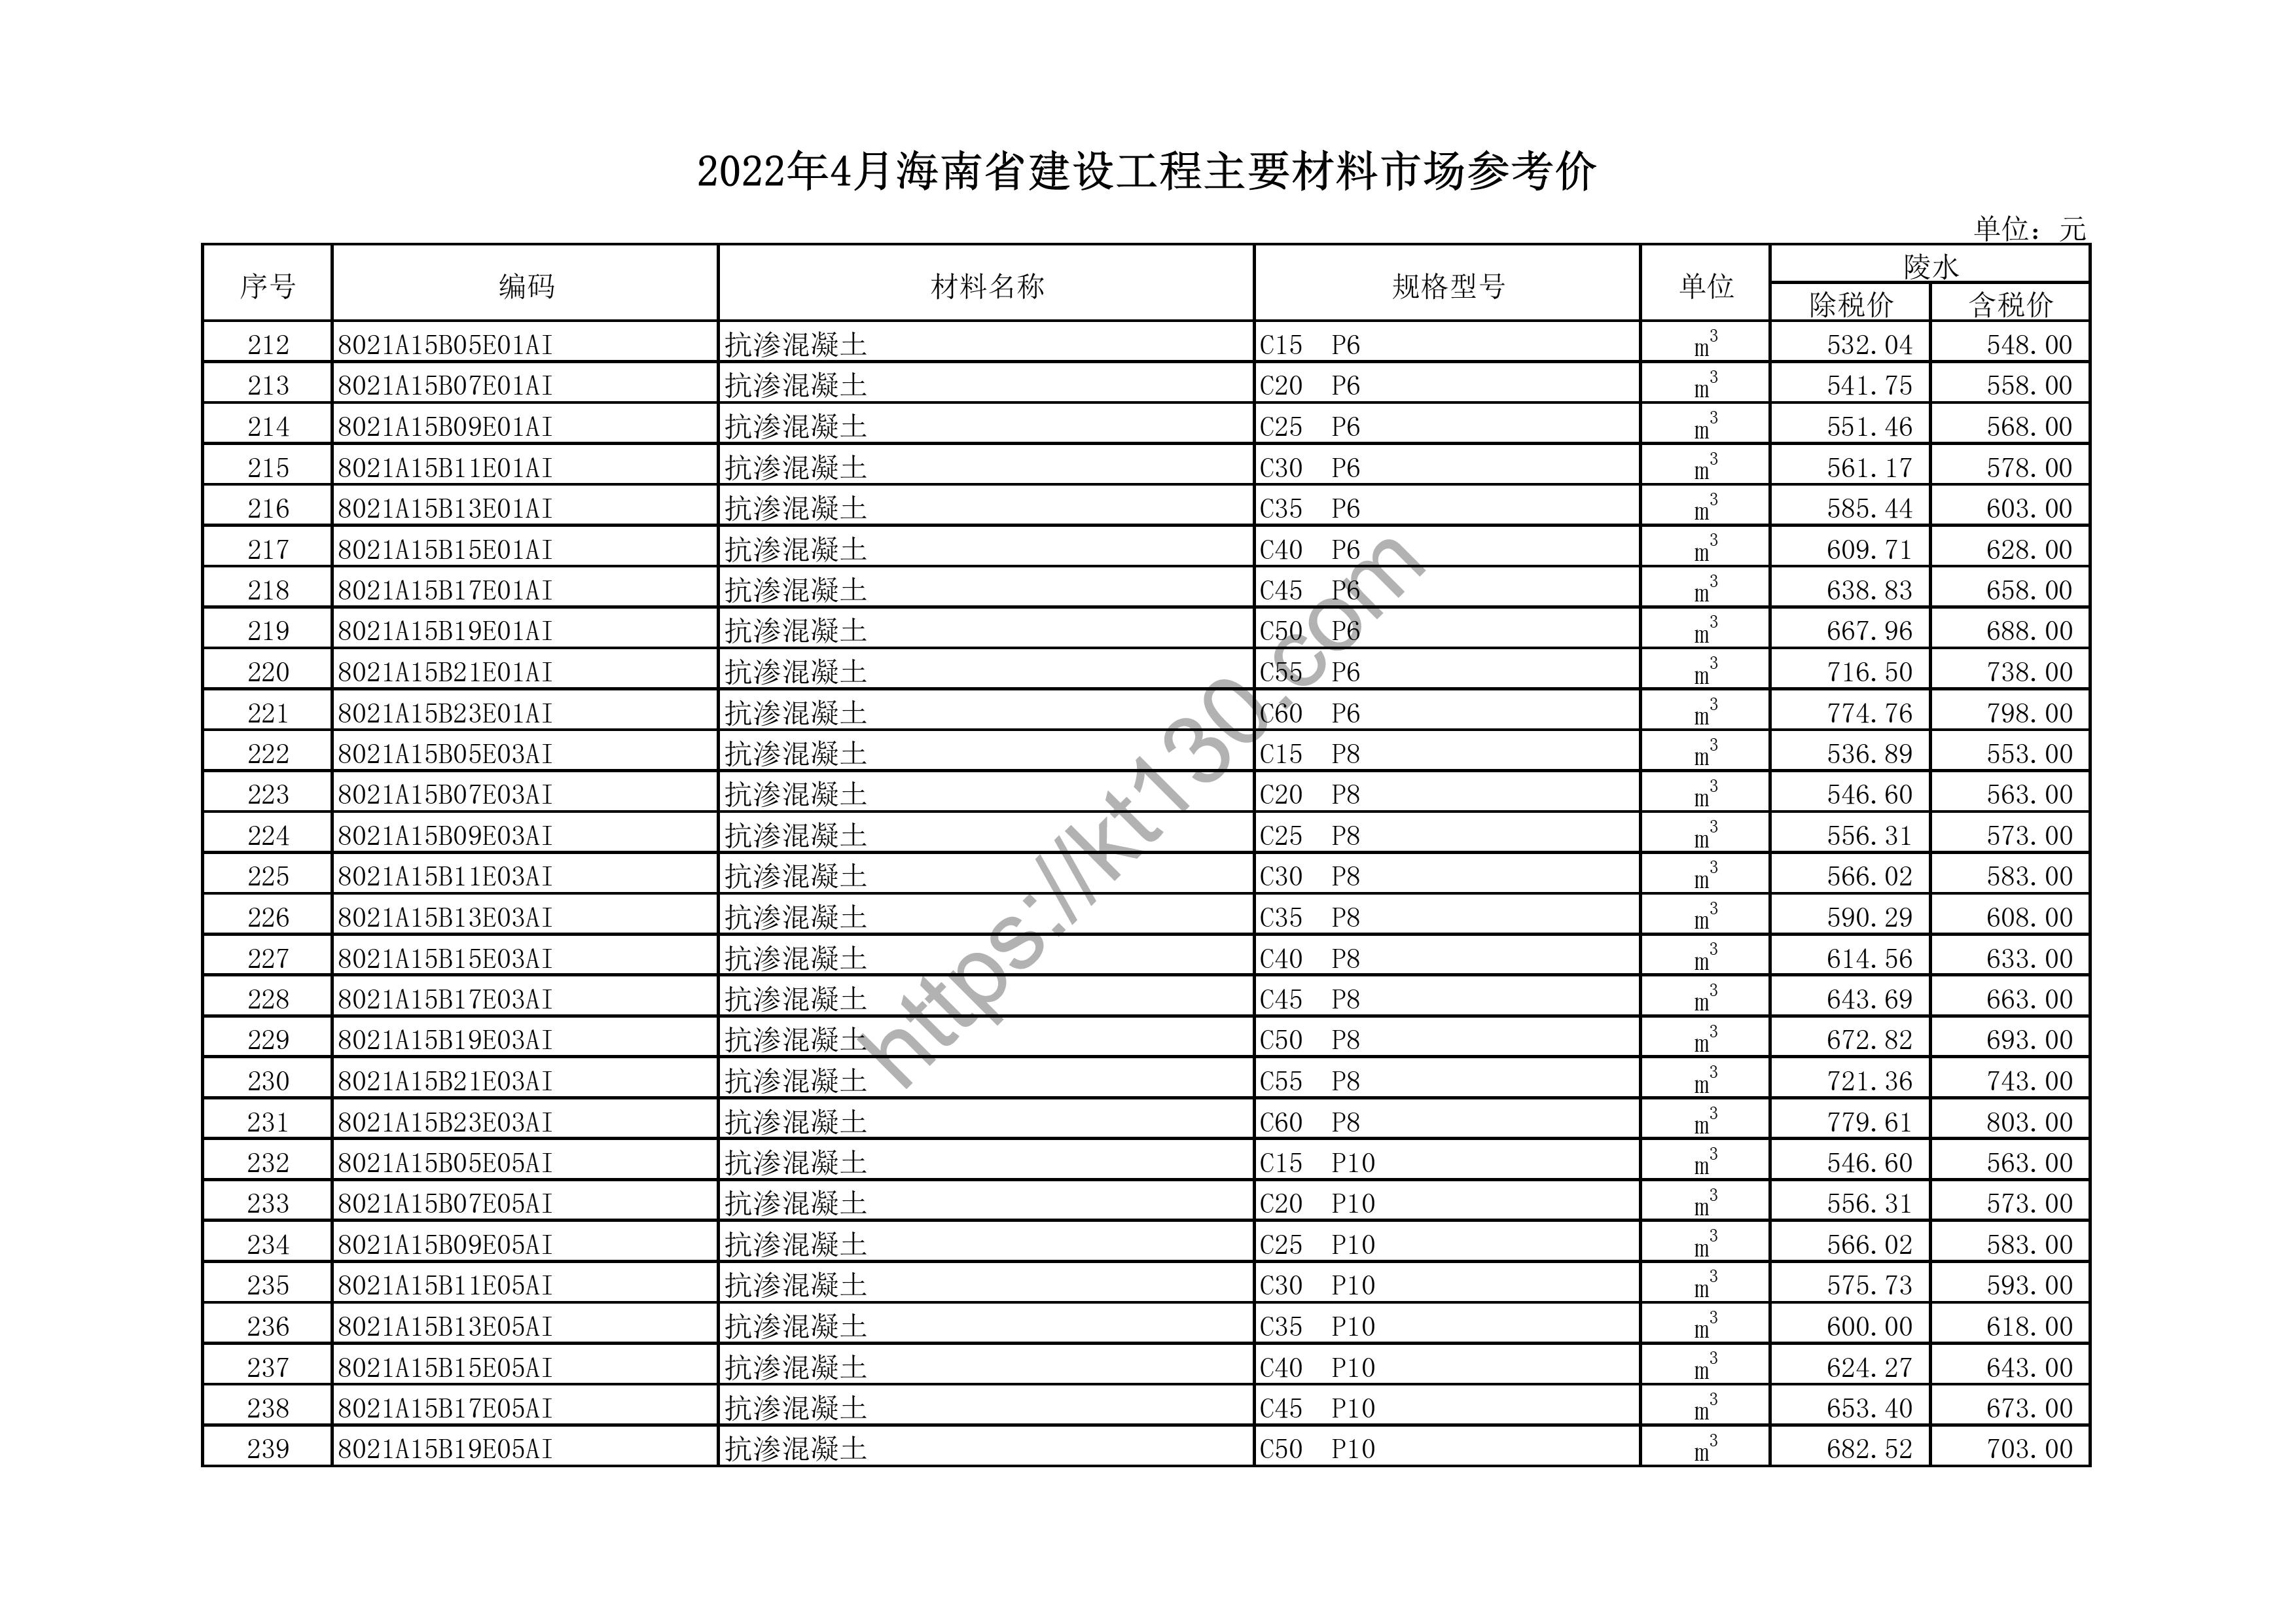 海南省2022年4月建筑材料价_氟碳三涂幕墙料_44180